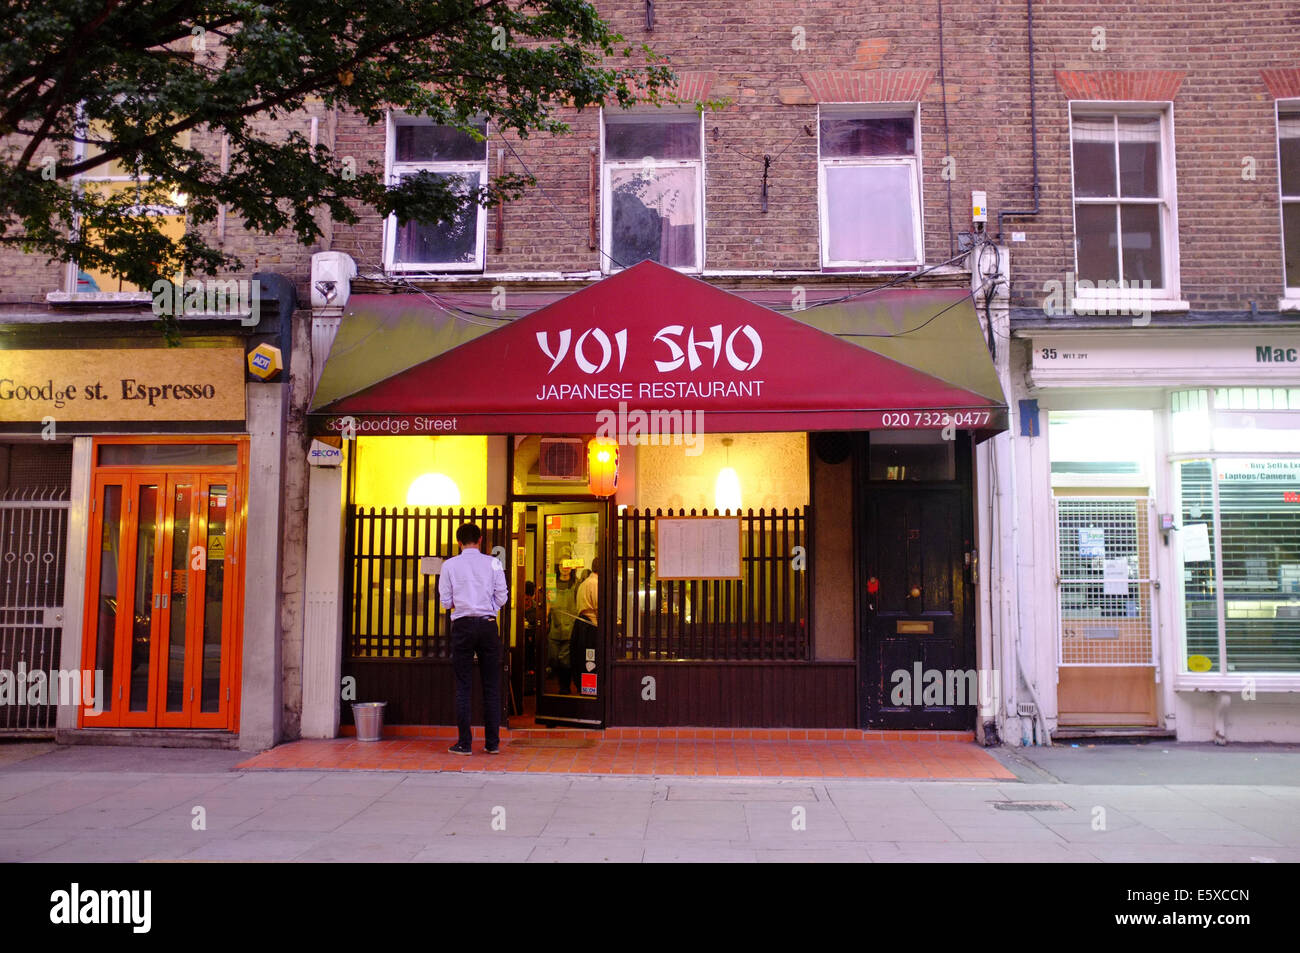 YOI SHO Restaurant japonais sur Goodge Street, Londres Banque D'Images